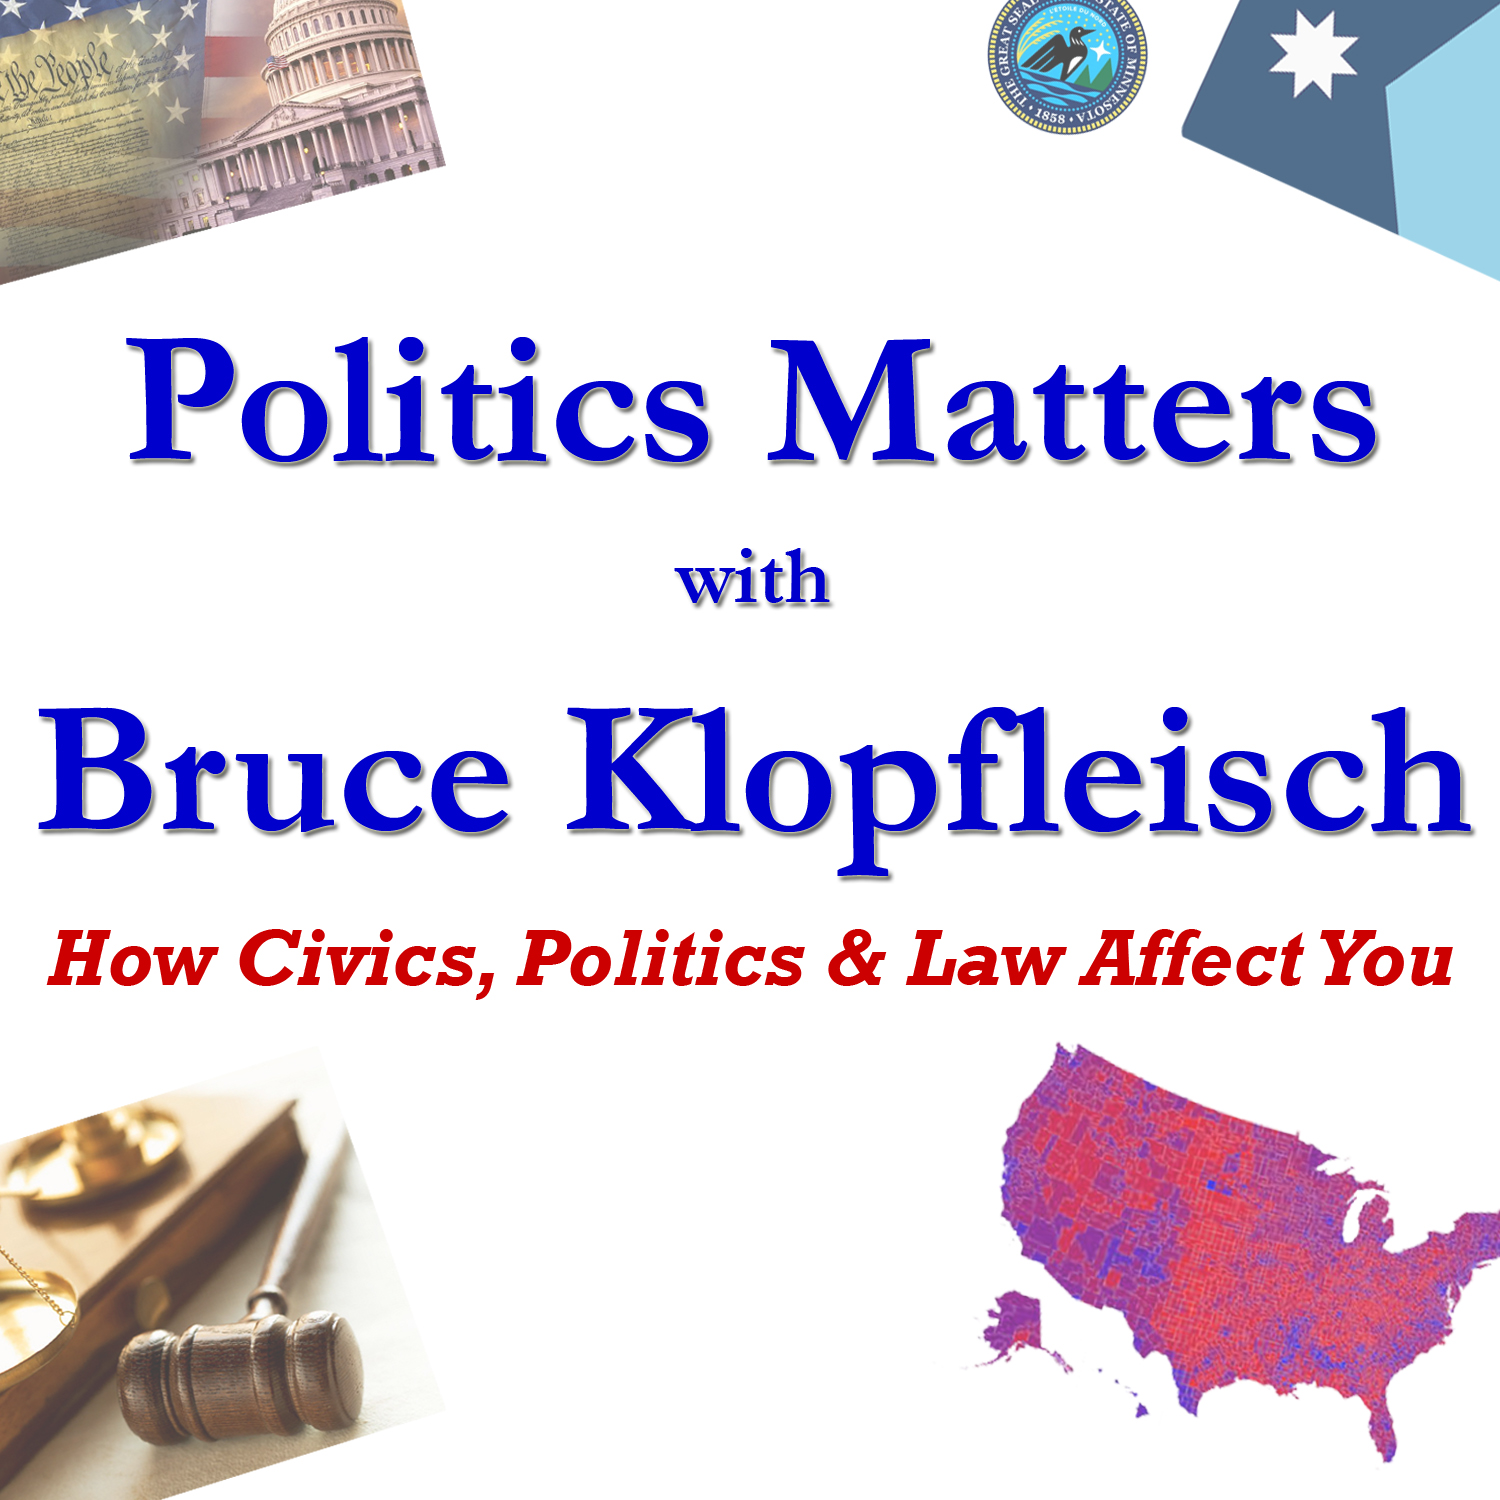 Politics Matters with Bruce Klopfleisch